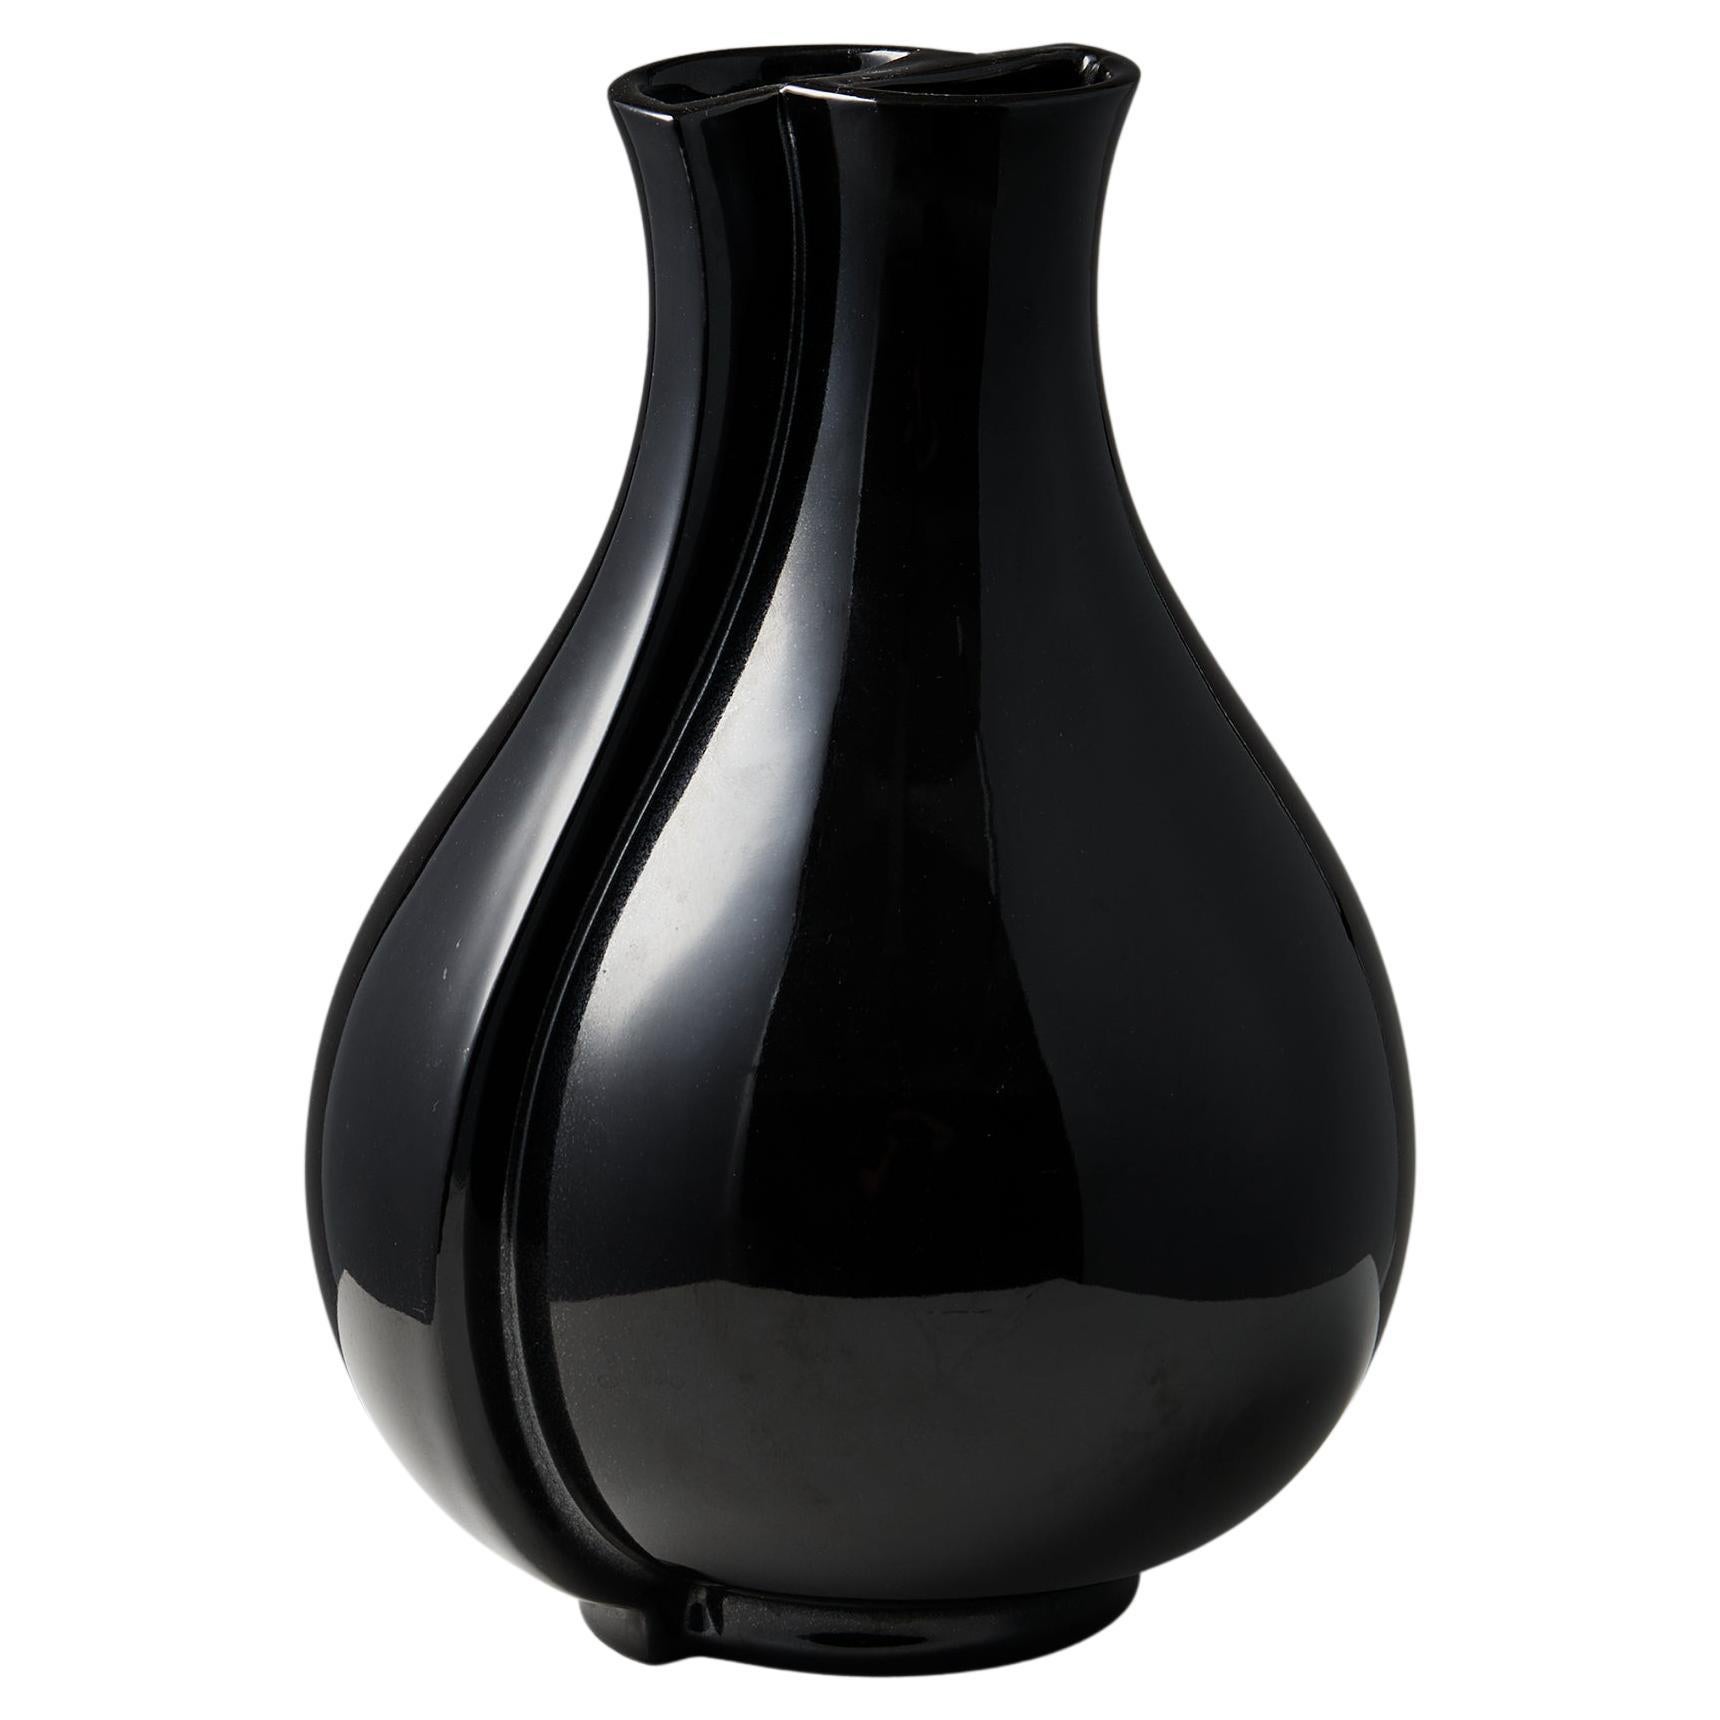 Vase Surrea am designs by Wilhem Kåge for Gustavsberg, Sweden, 1950's